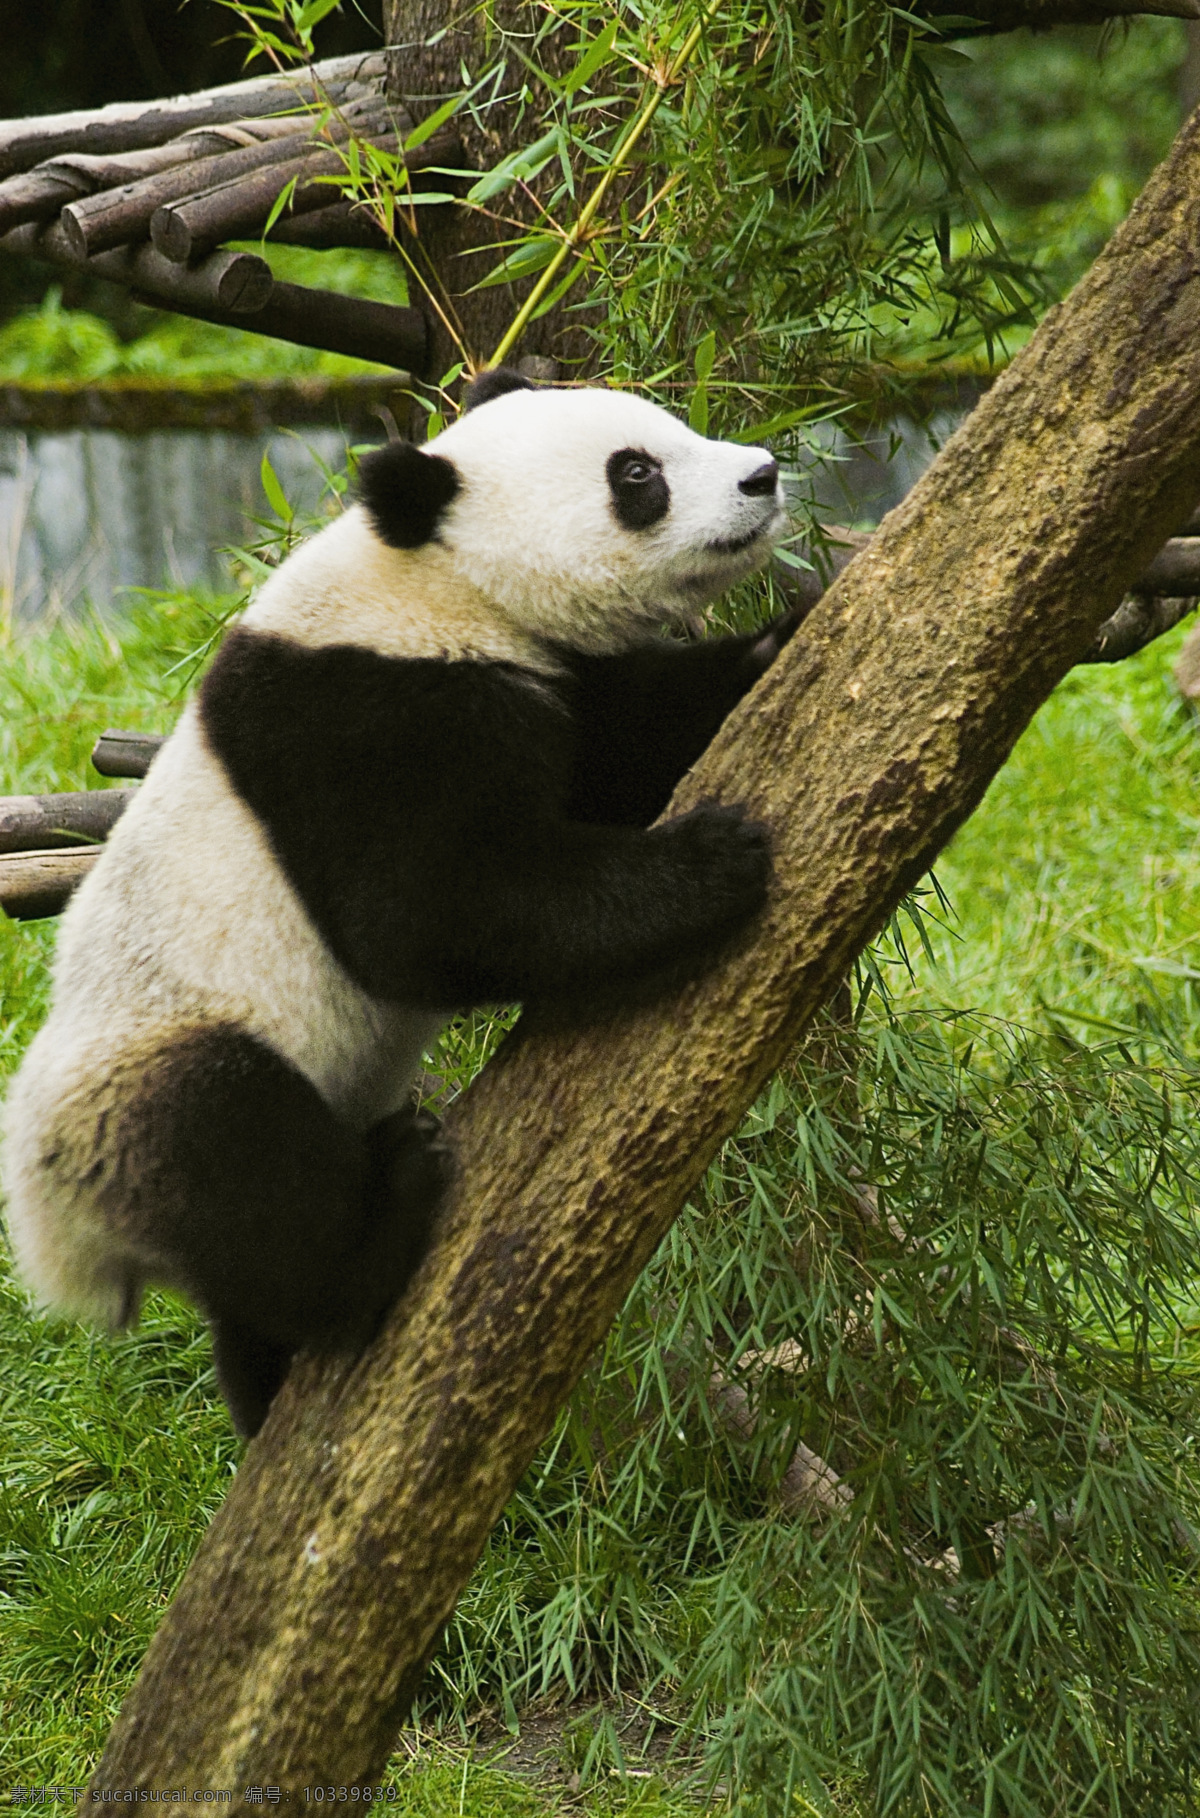 熊猫 野生动物 生物世界 高清图片 jpg图库 摄影图片 竹子 竹叶 爬树 国宝 国宝熊猫 陆地动物 黑色